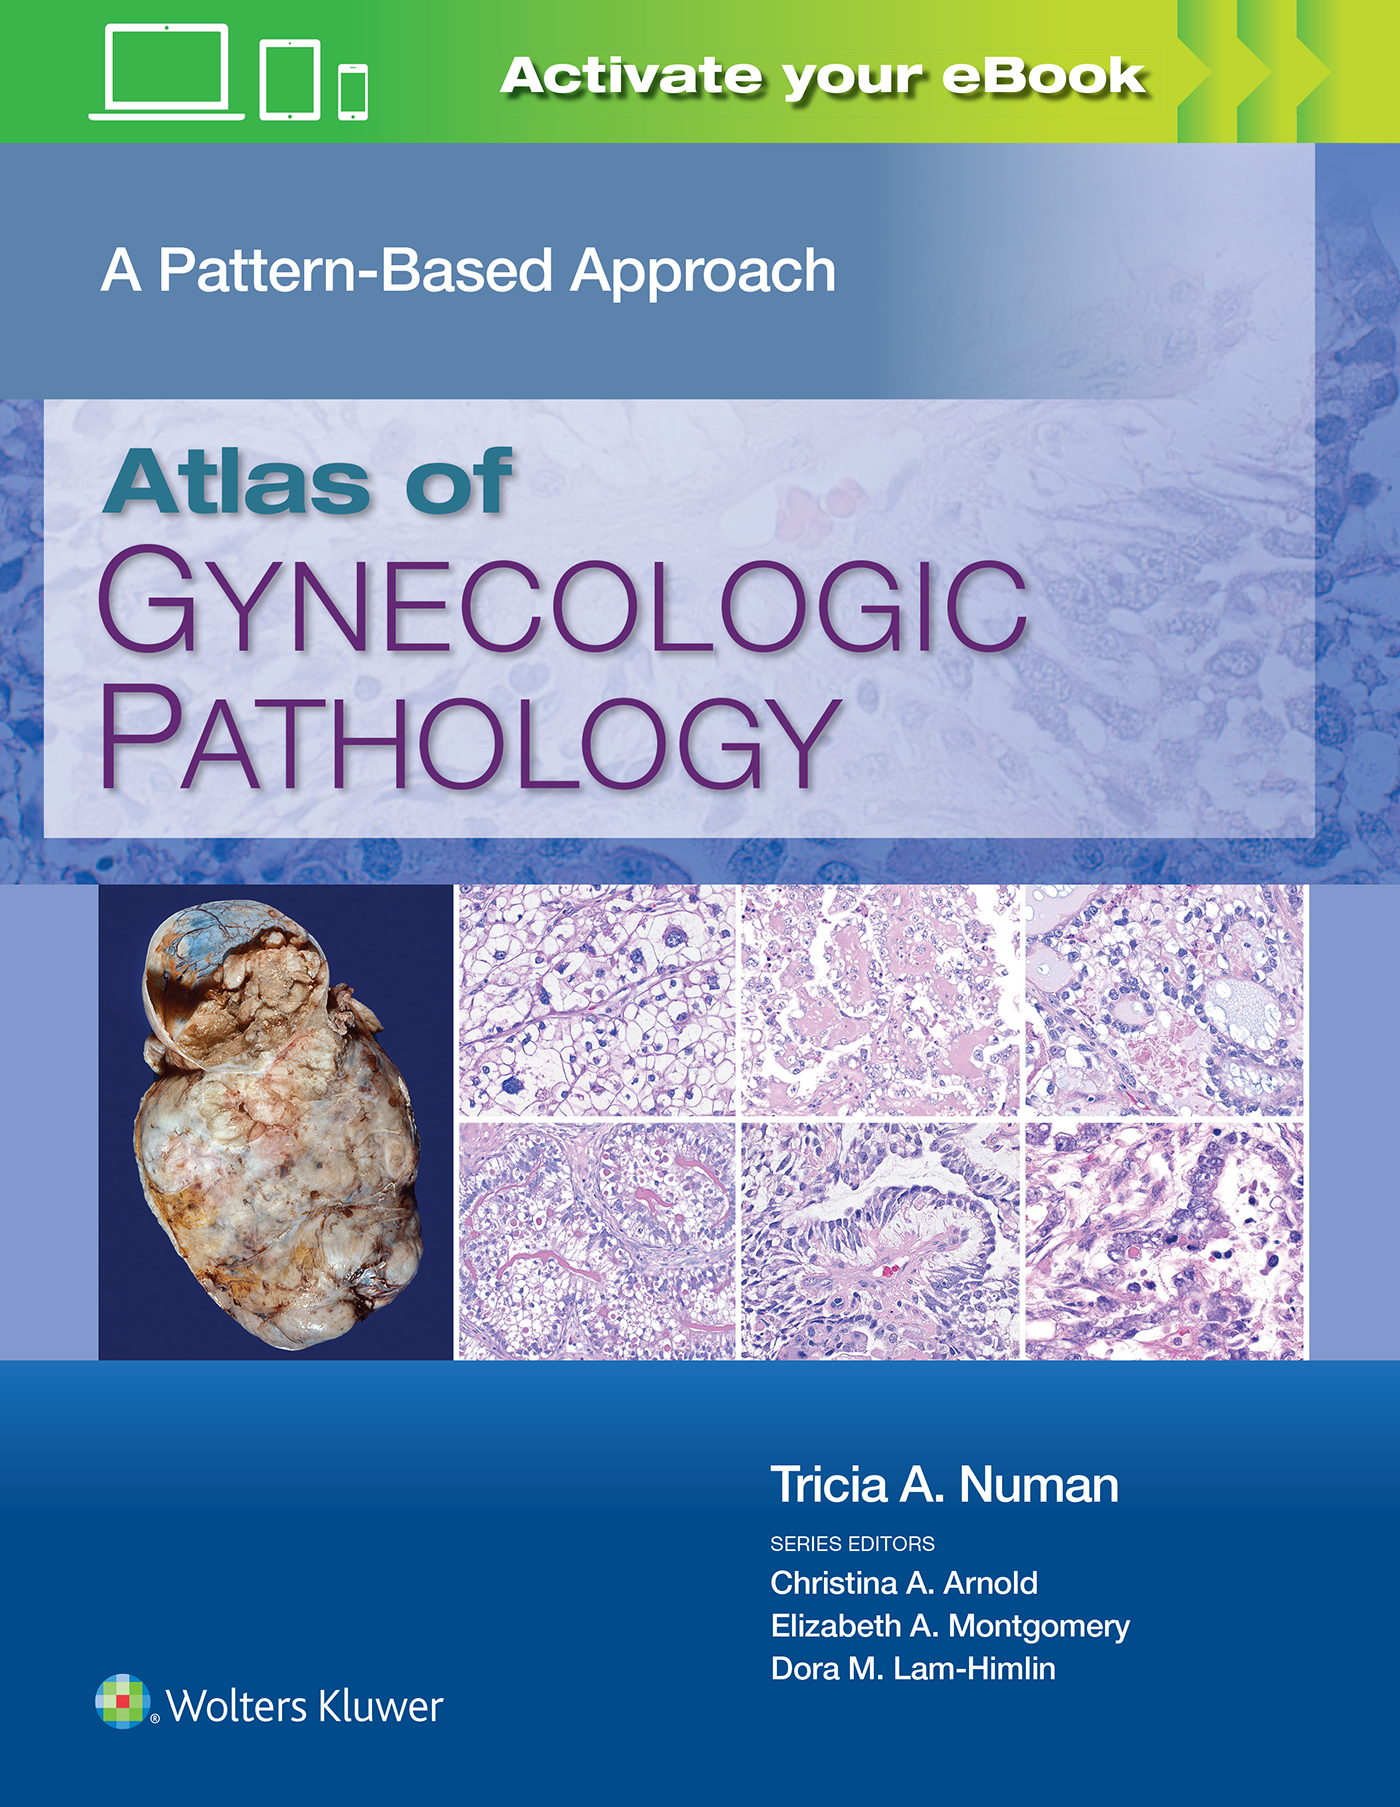 Atlas of Gynecologic Pathology- A Pattern-Based Approach